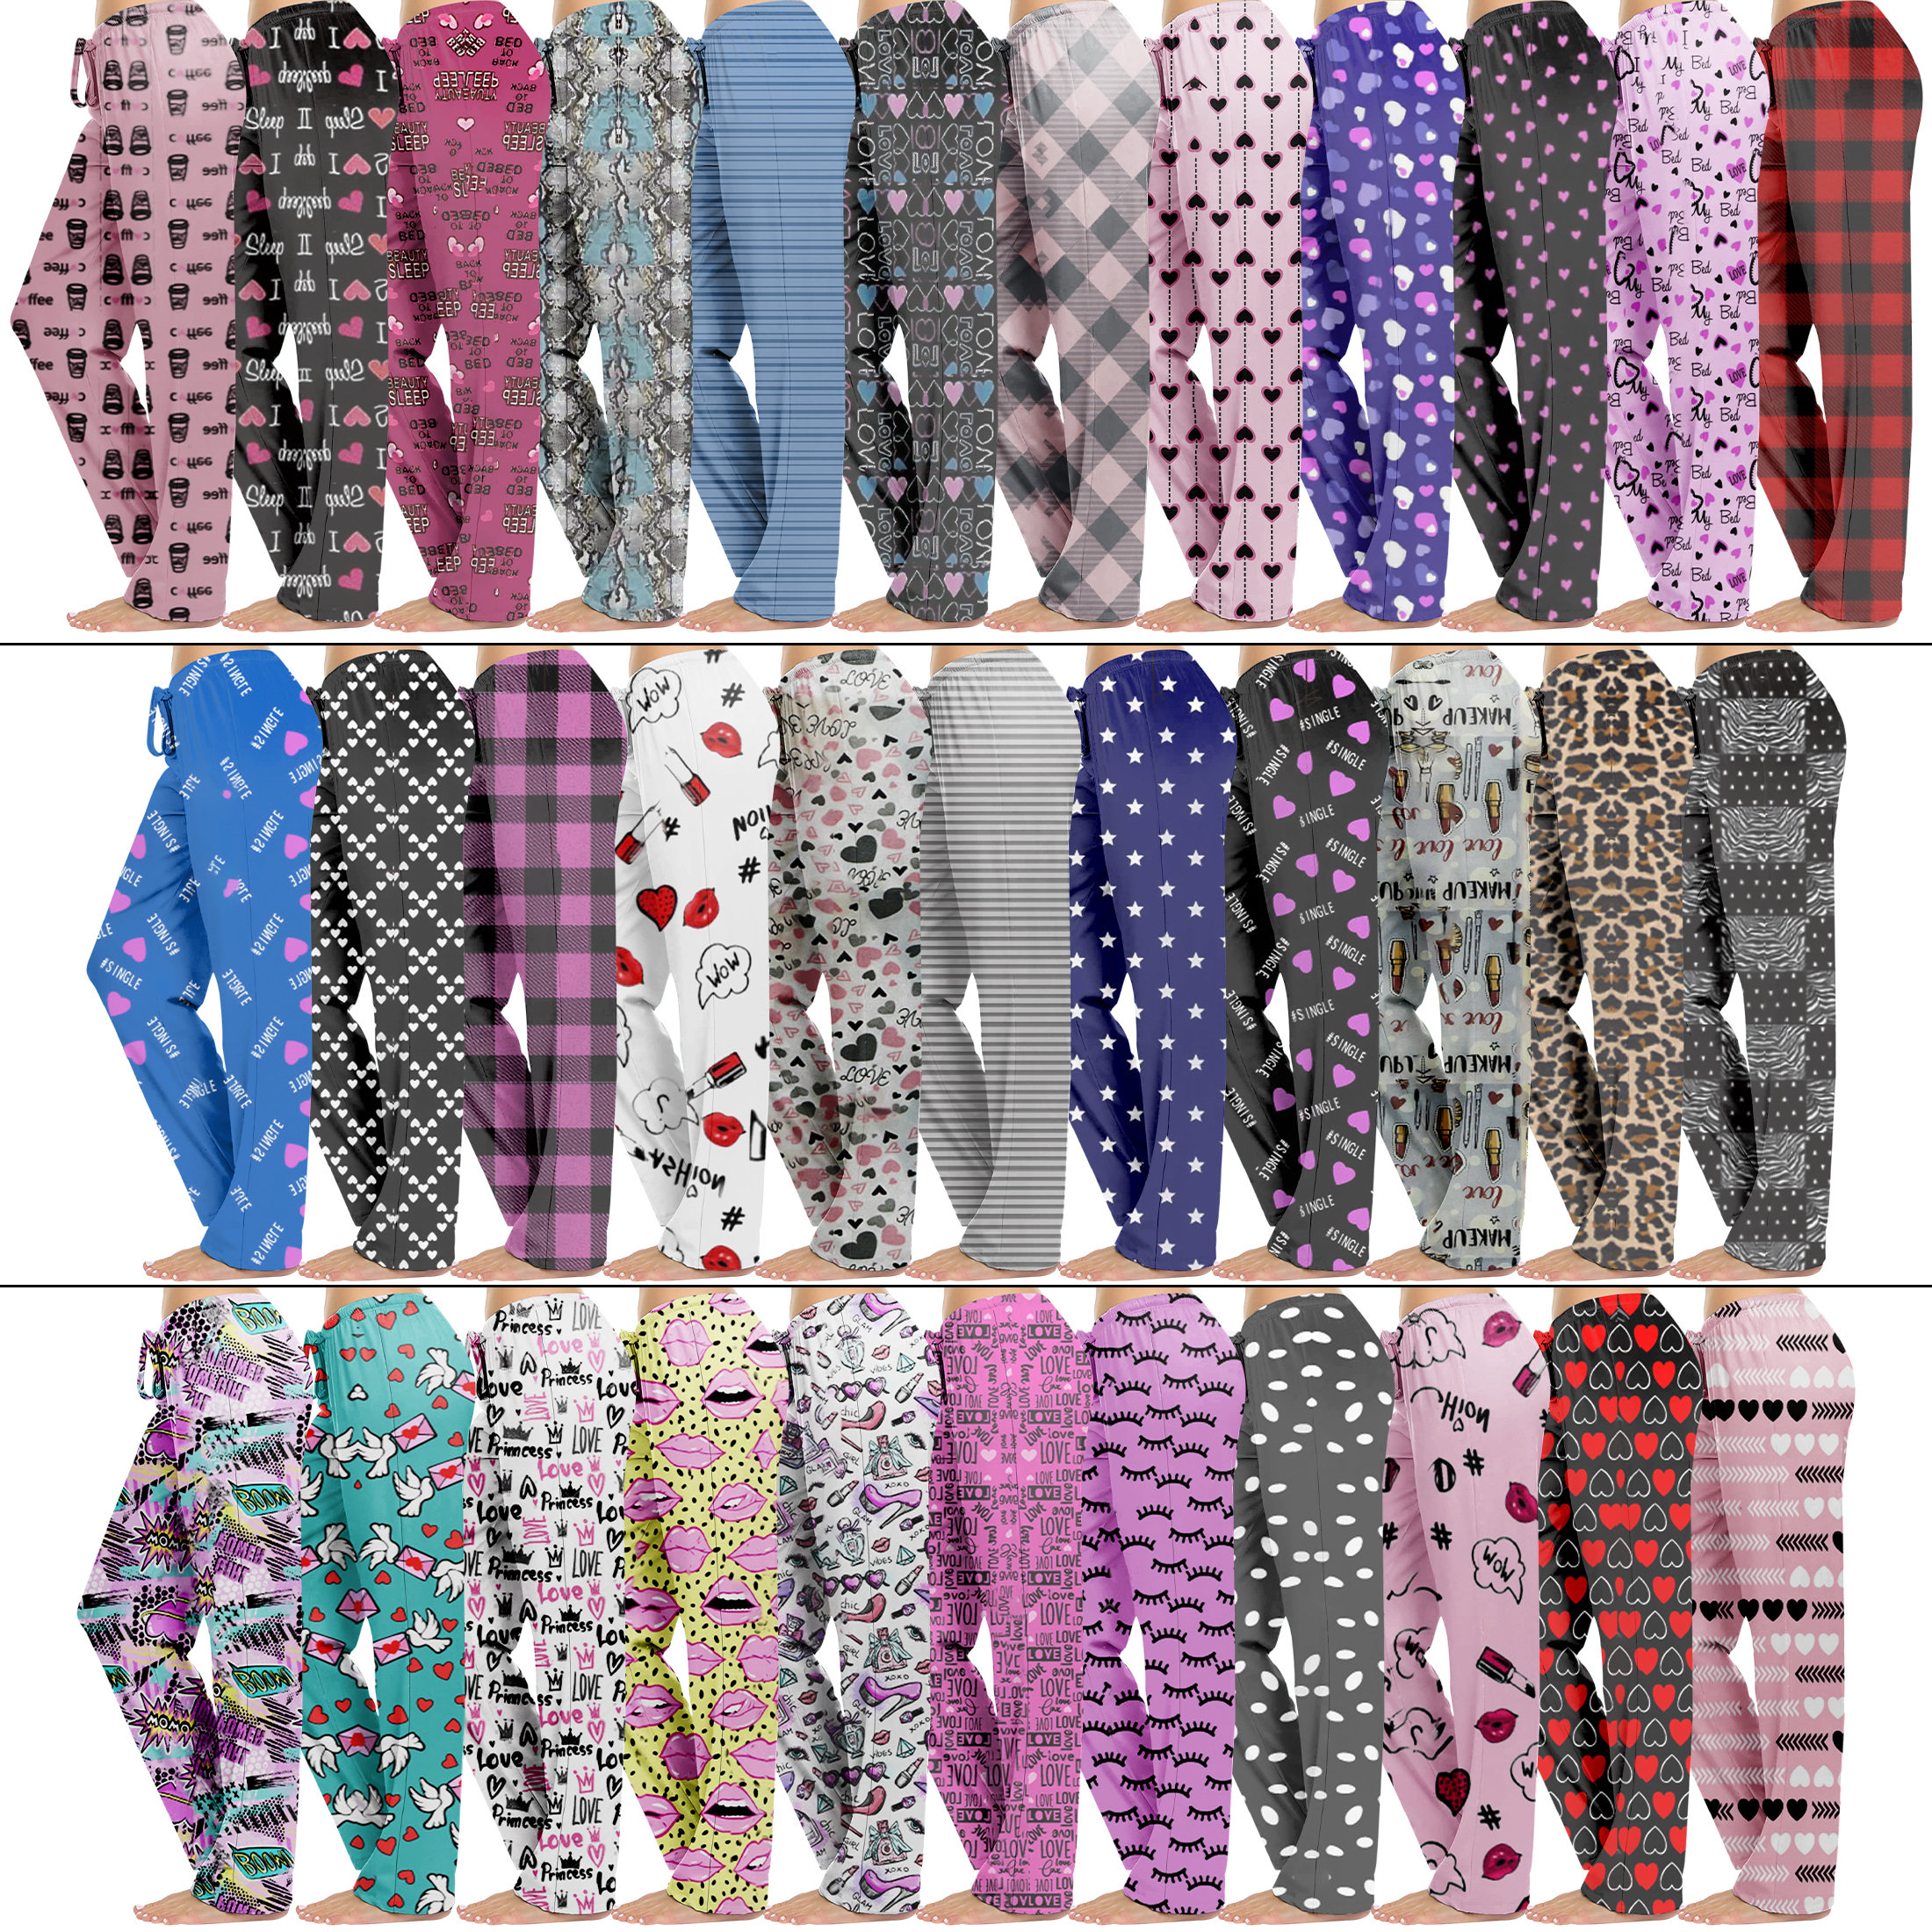 Multi-Pack: Women's Comfy Printed Lounge Pajama Pants For Sleepwear - 3 Pack, Medium